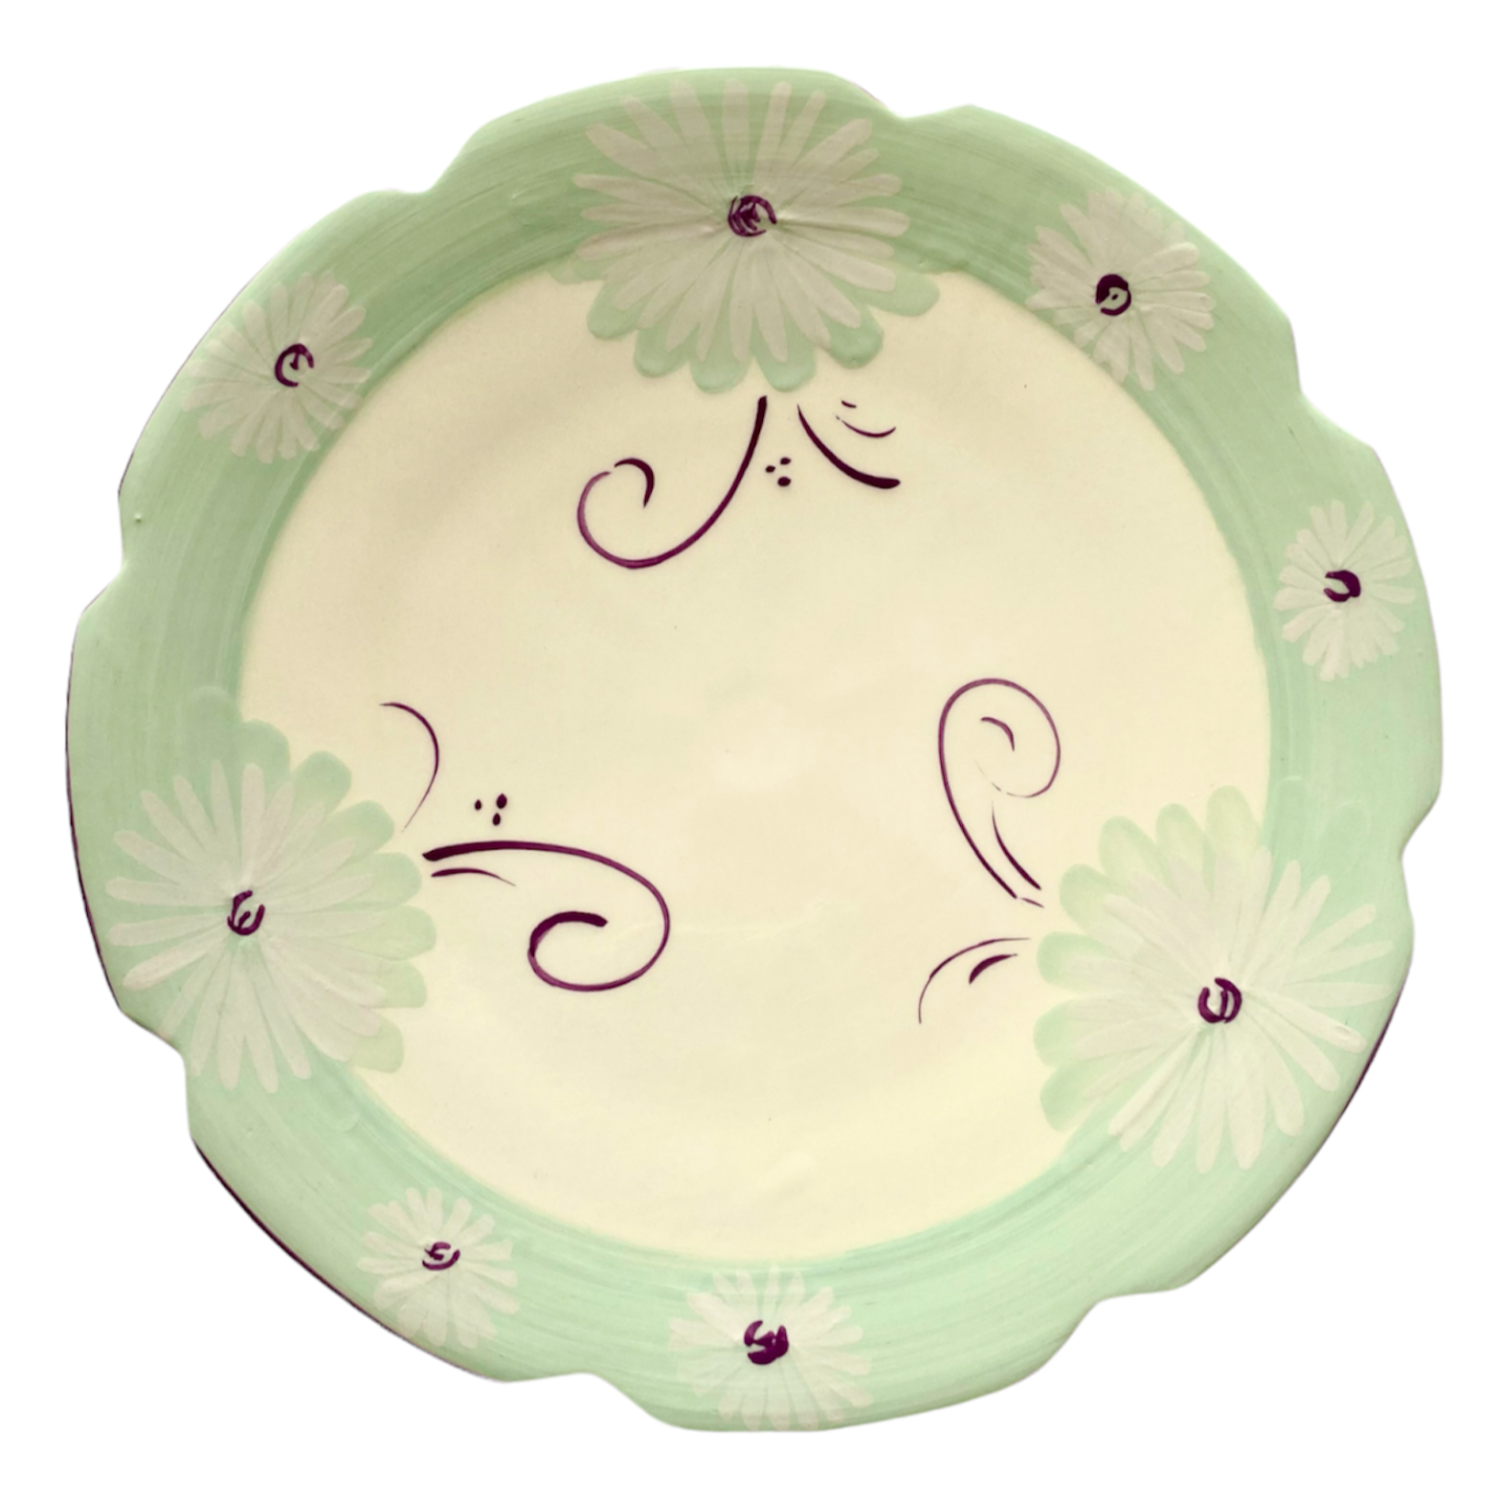 Bon Appétit Large Plate - Mint & Lilac